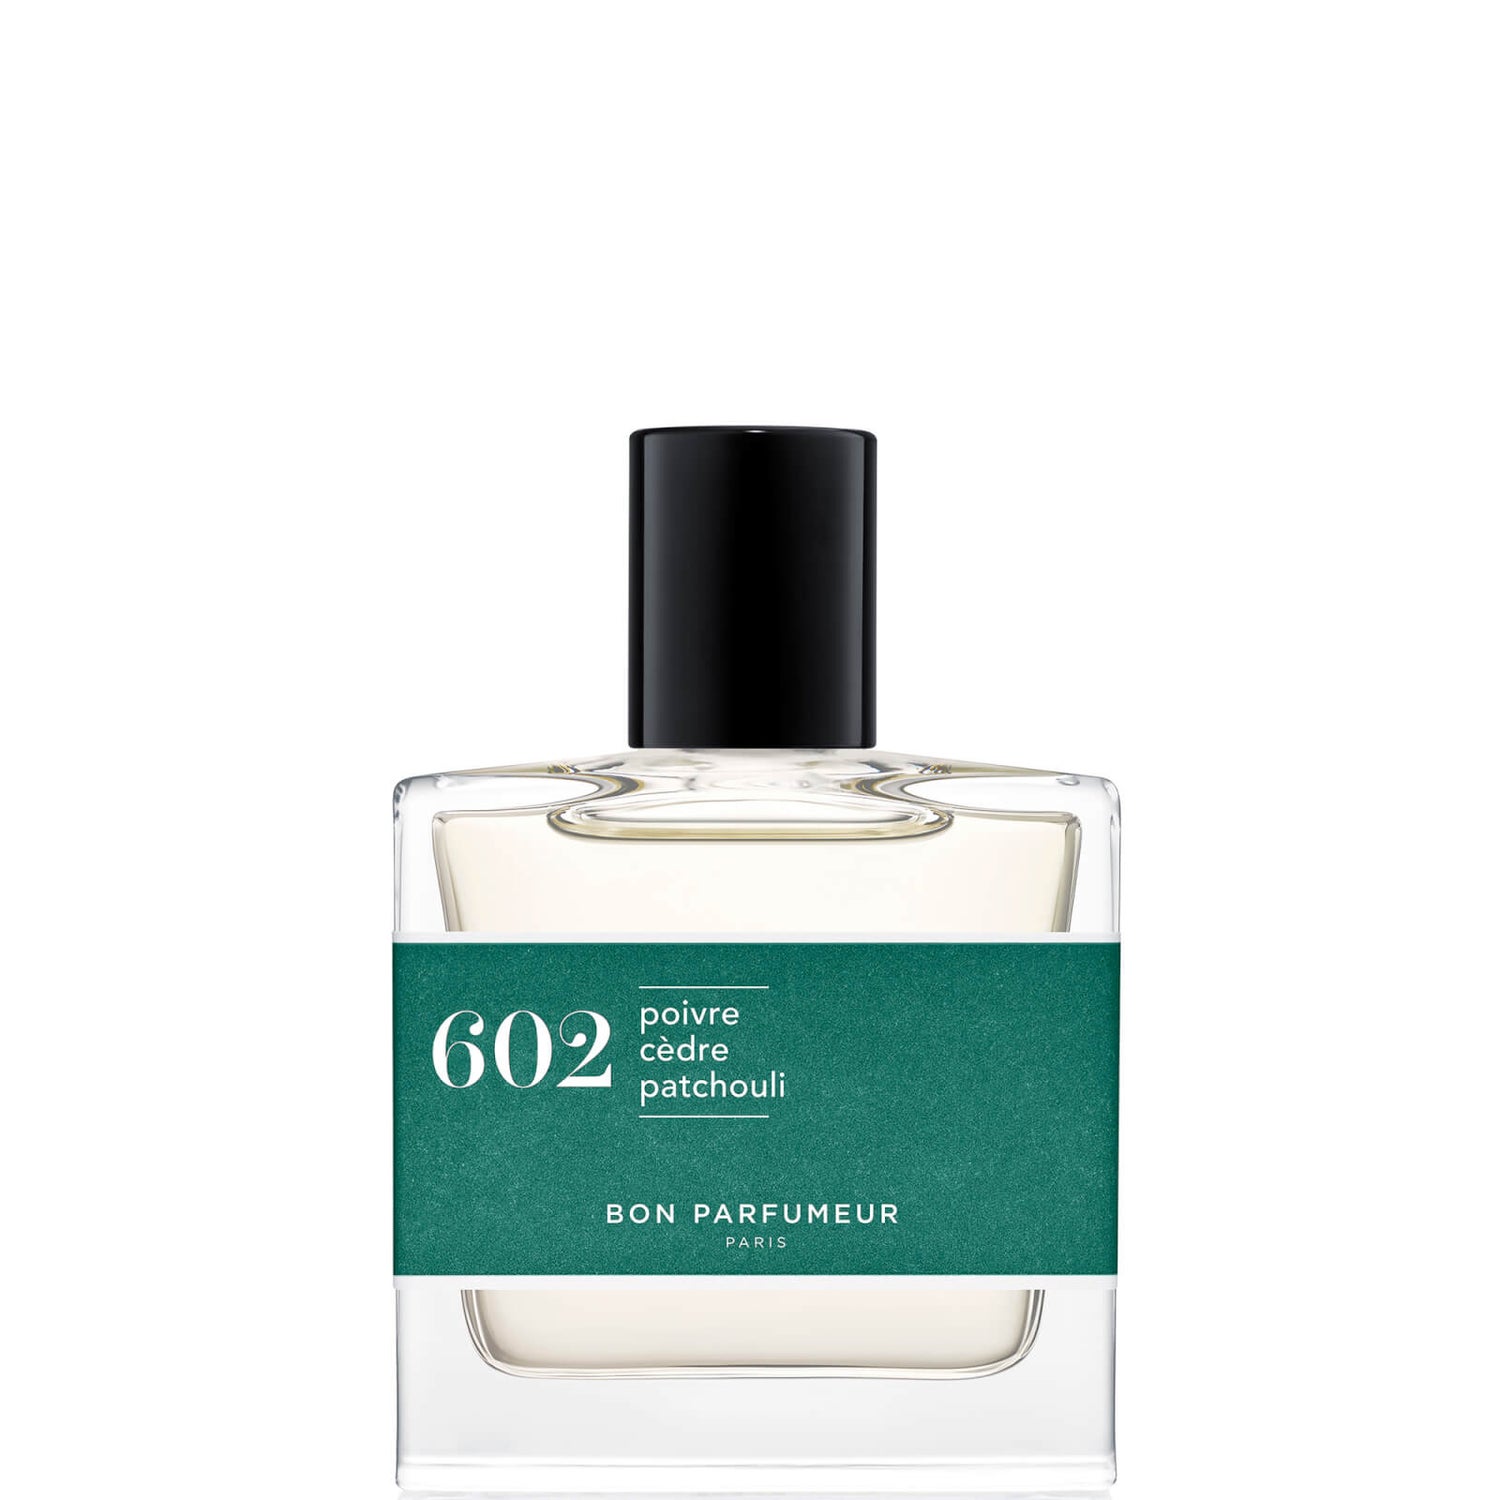 Bon Parfumeur 602 Pepe Cedro Patchouli Eau de Parfum - 30ml